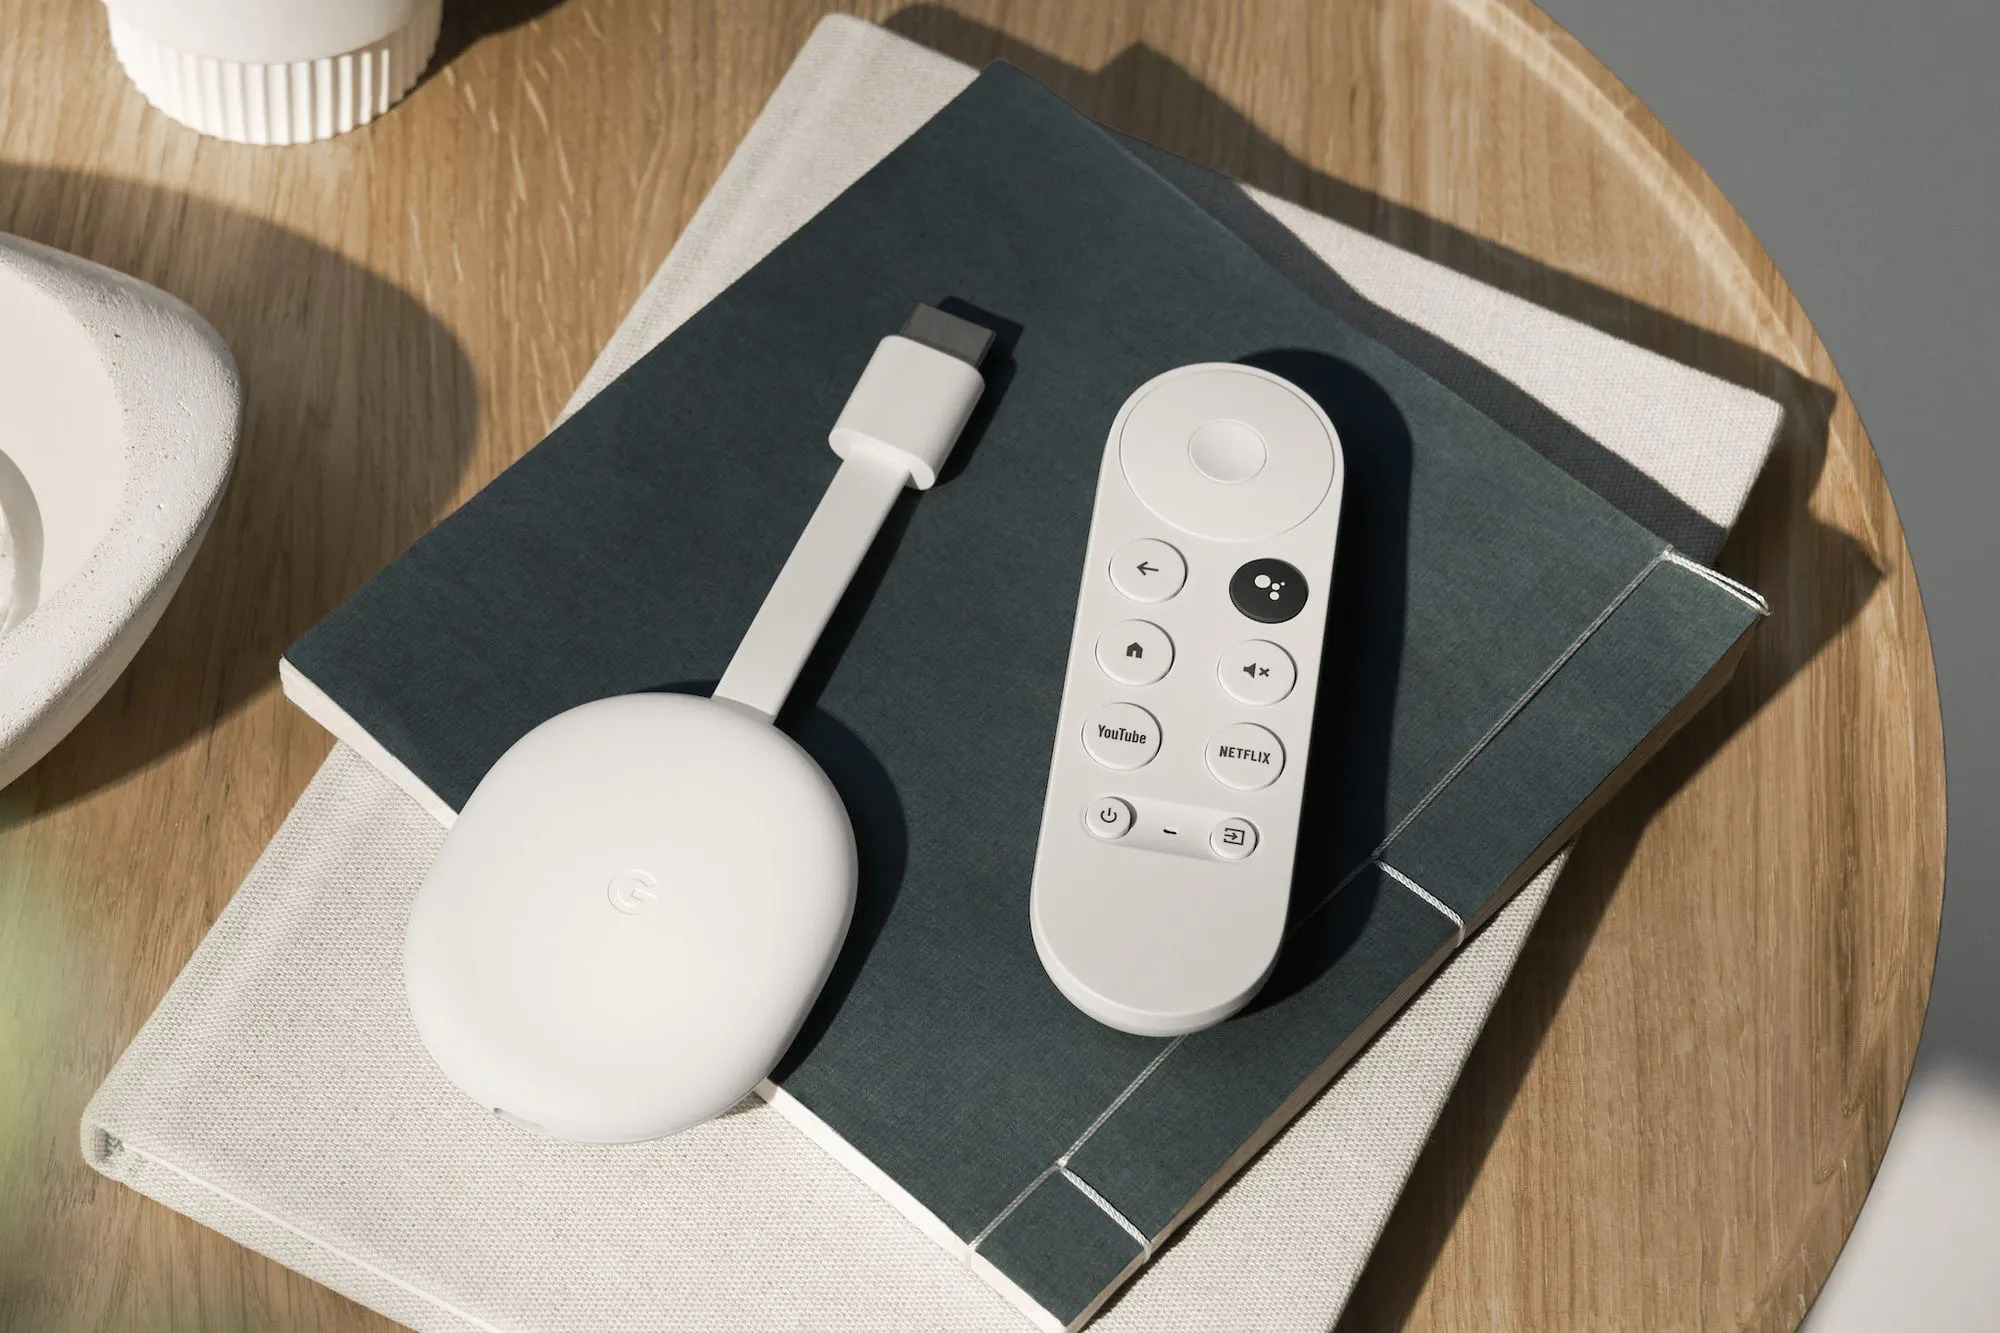 Offre limitée dans le temps : Chromecast avec Google TV (HD) sur Amazon pour 33% de réduction